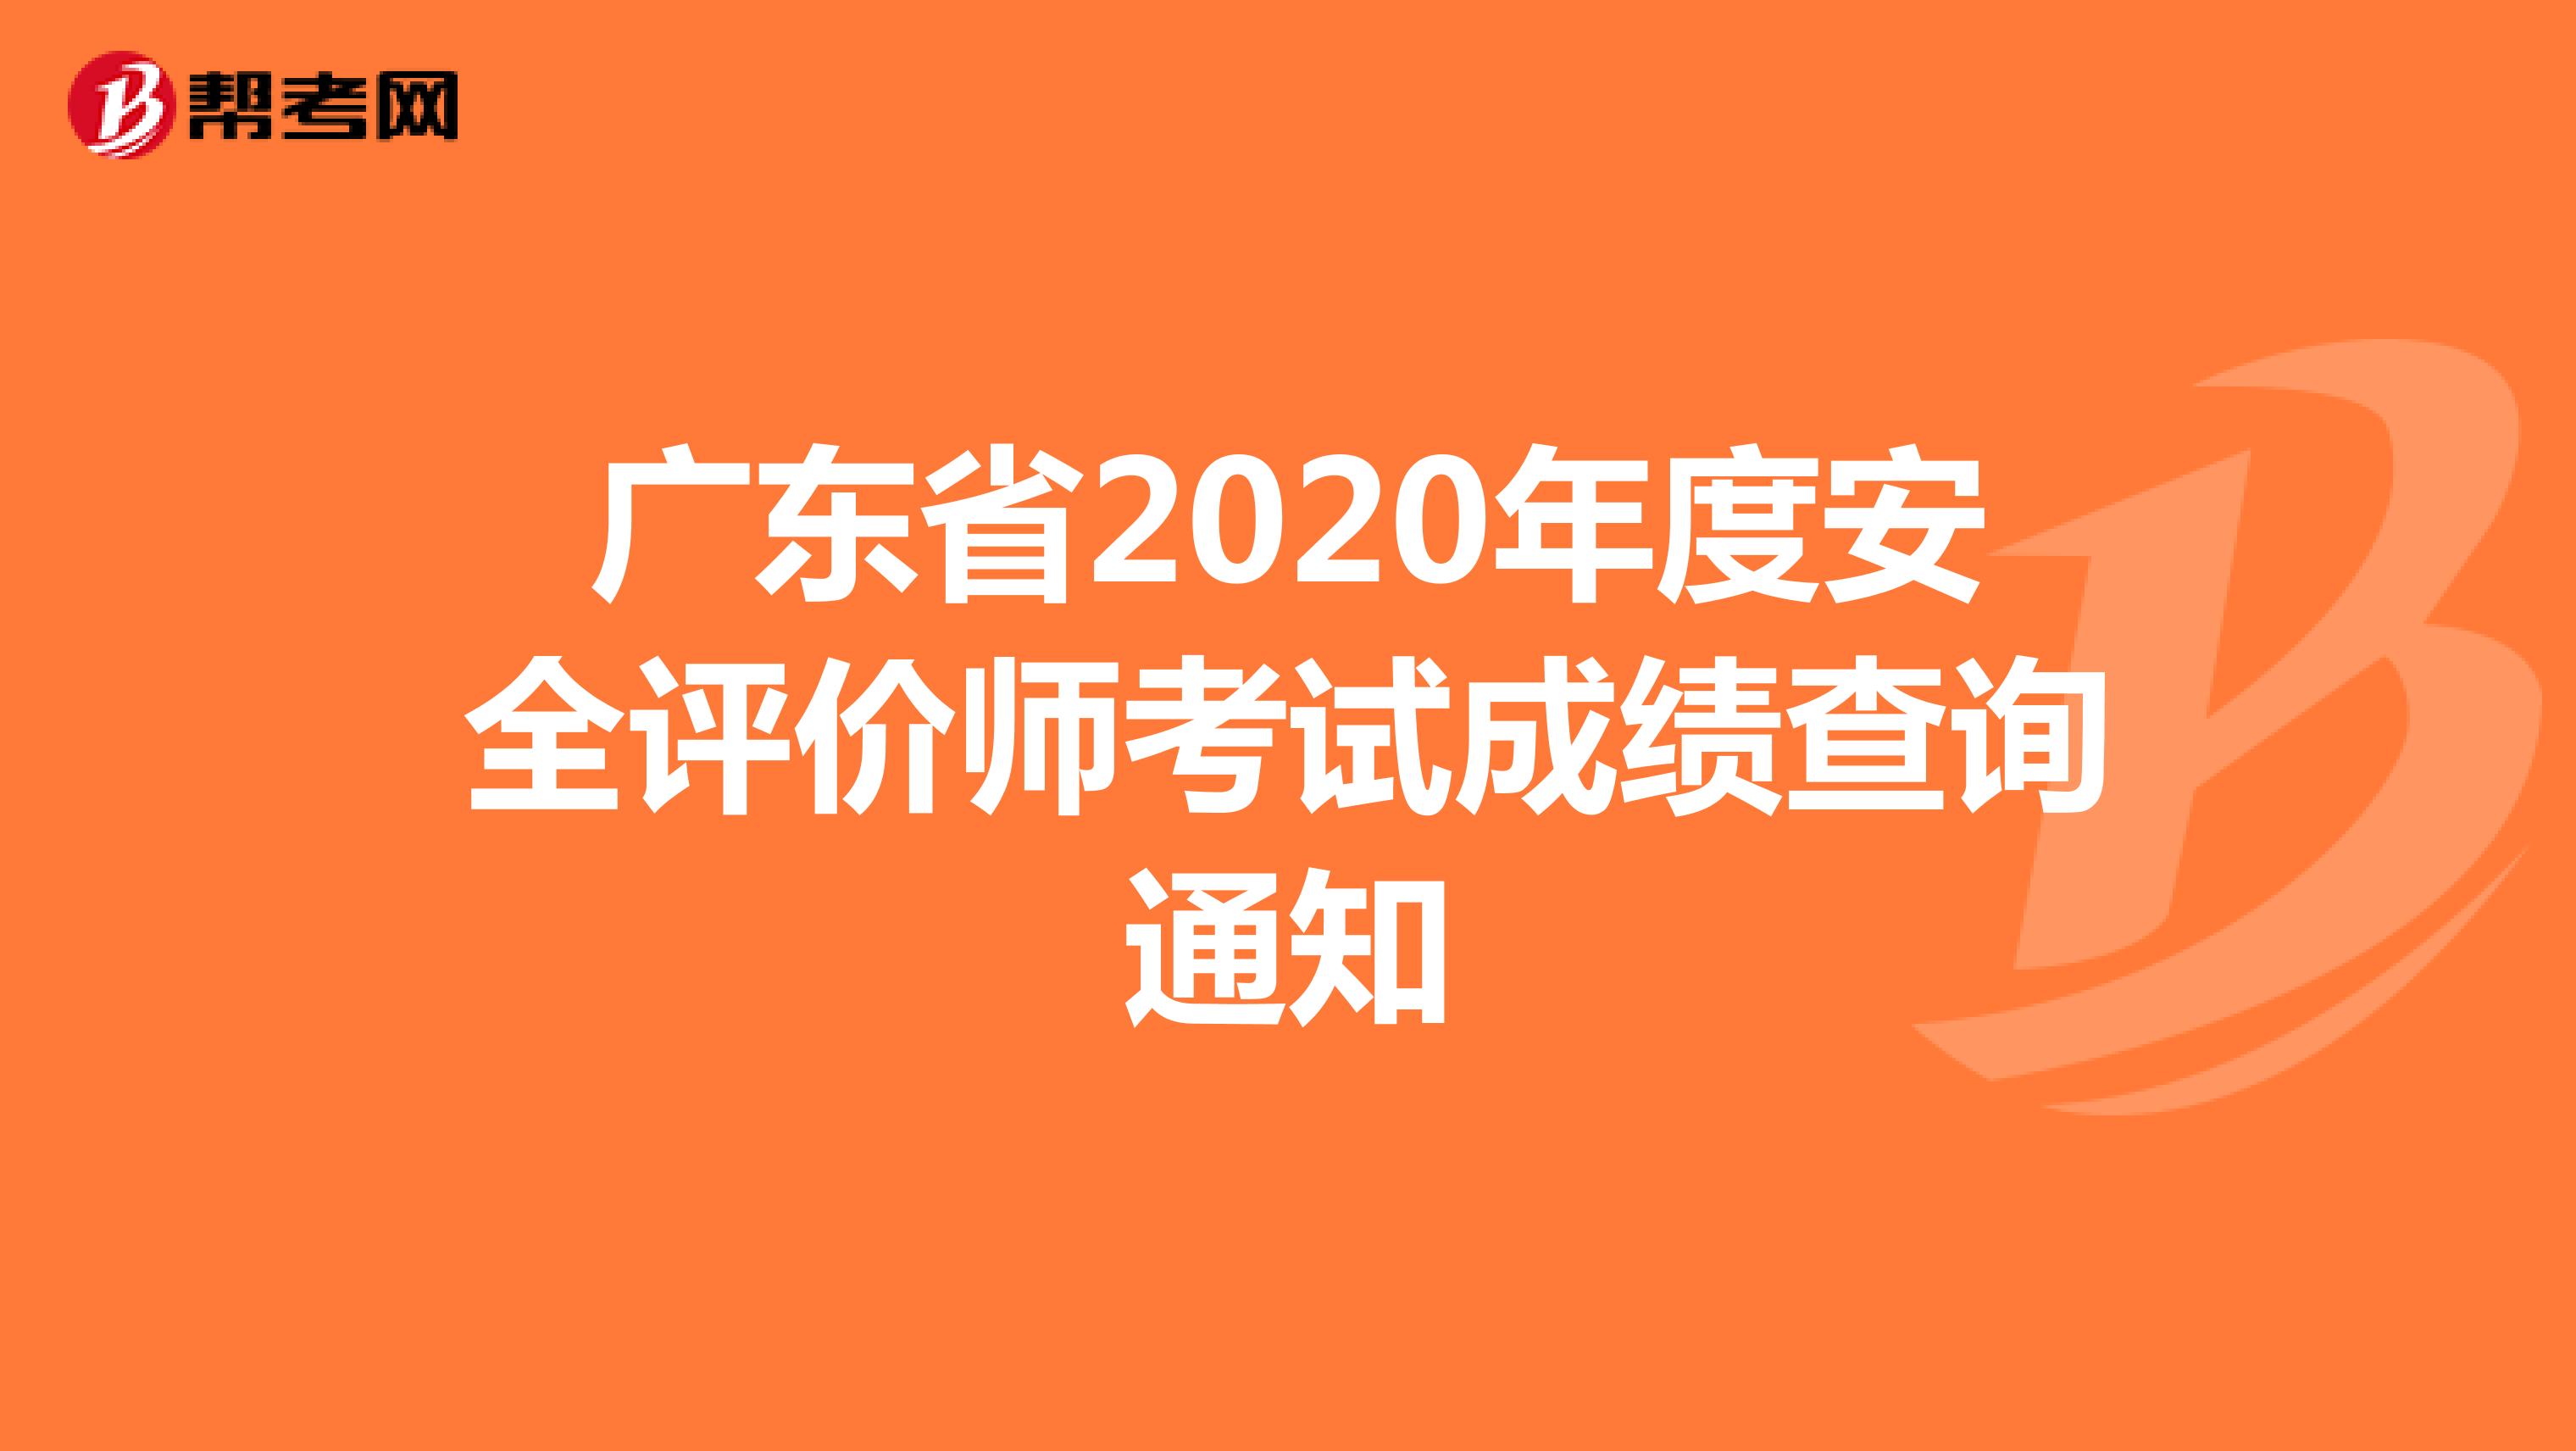 广东省2020年度安全评价师考试成绩查询通知